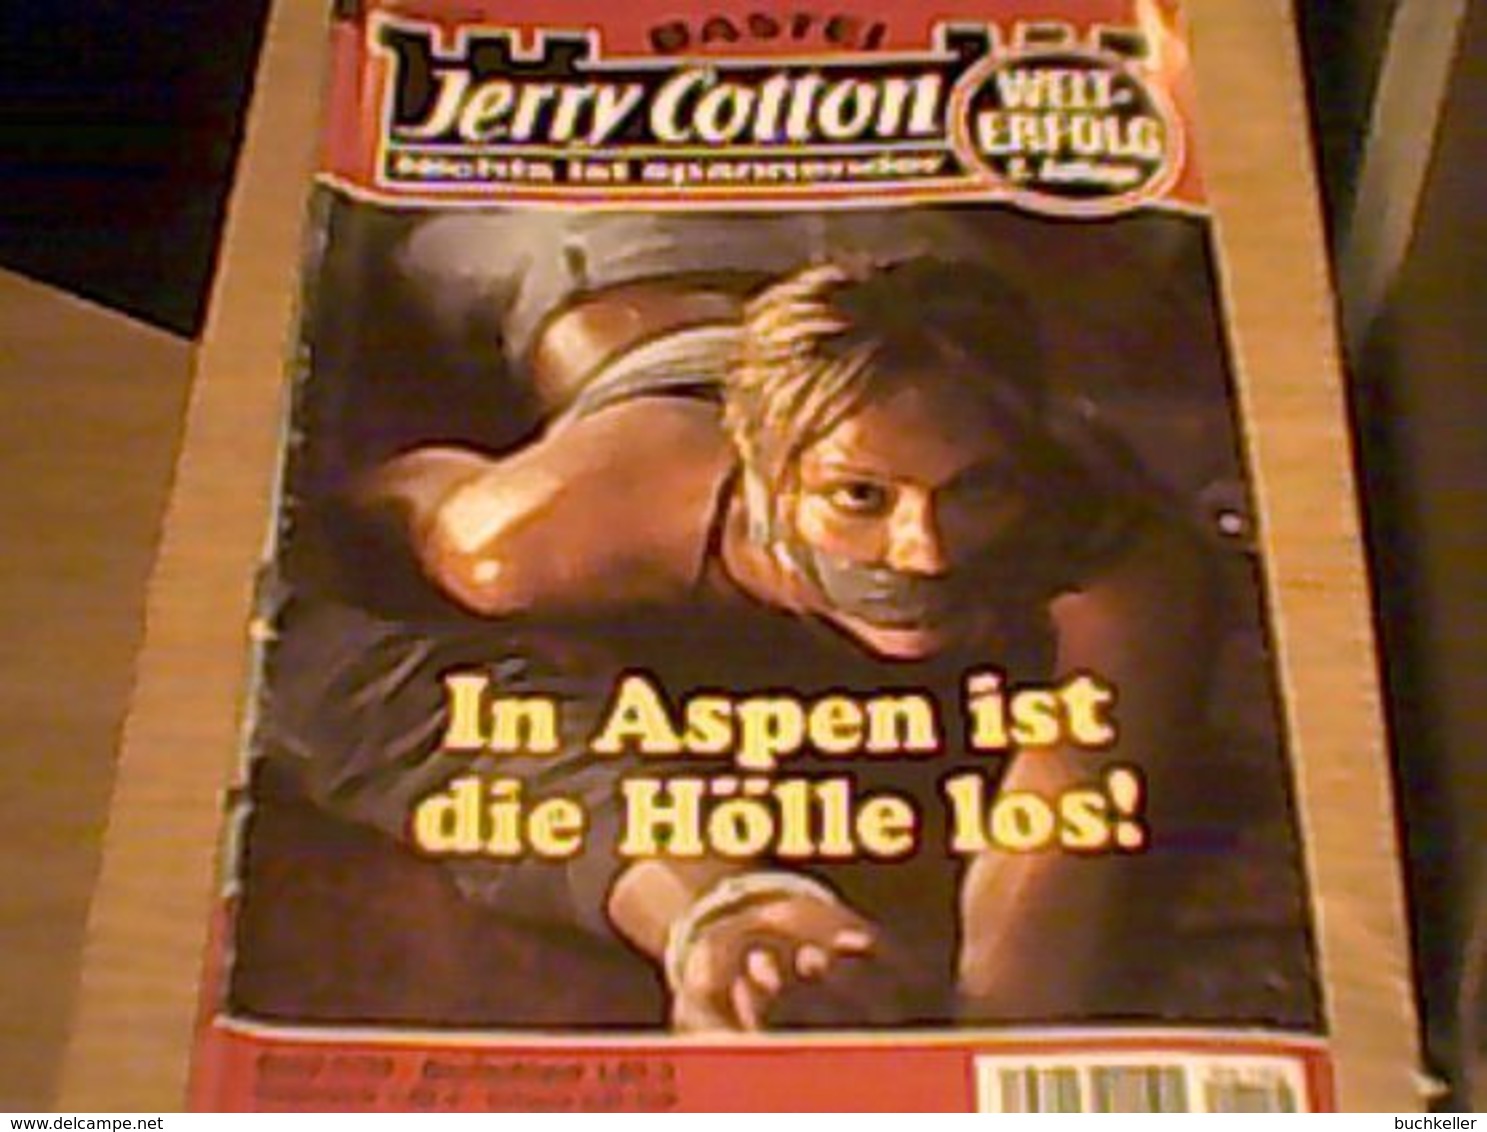 G-man Jerry Cotton - Band 2156 - 2. Auflage - Bastei Verlag - Romanheft - Thriller